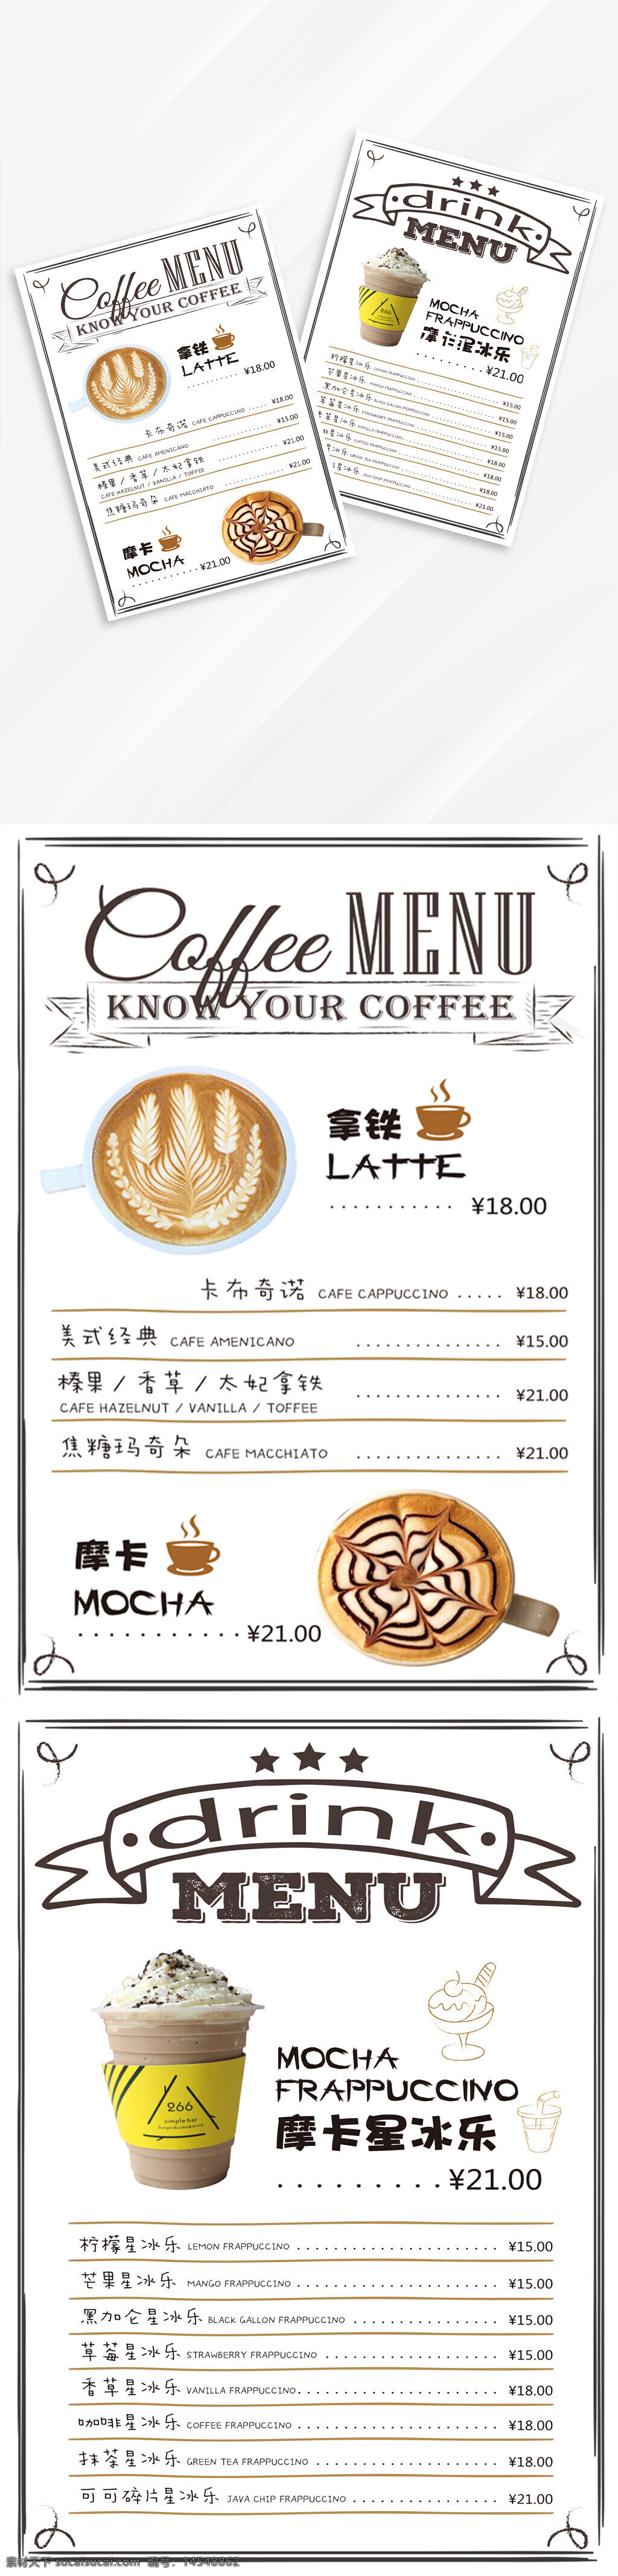 咖啡店 咖啡点单 白色背景 摩卡价格 咖啡价格